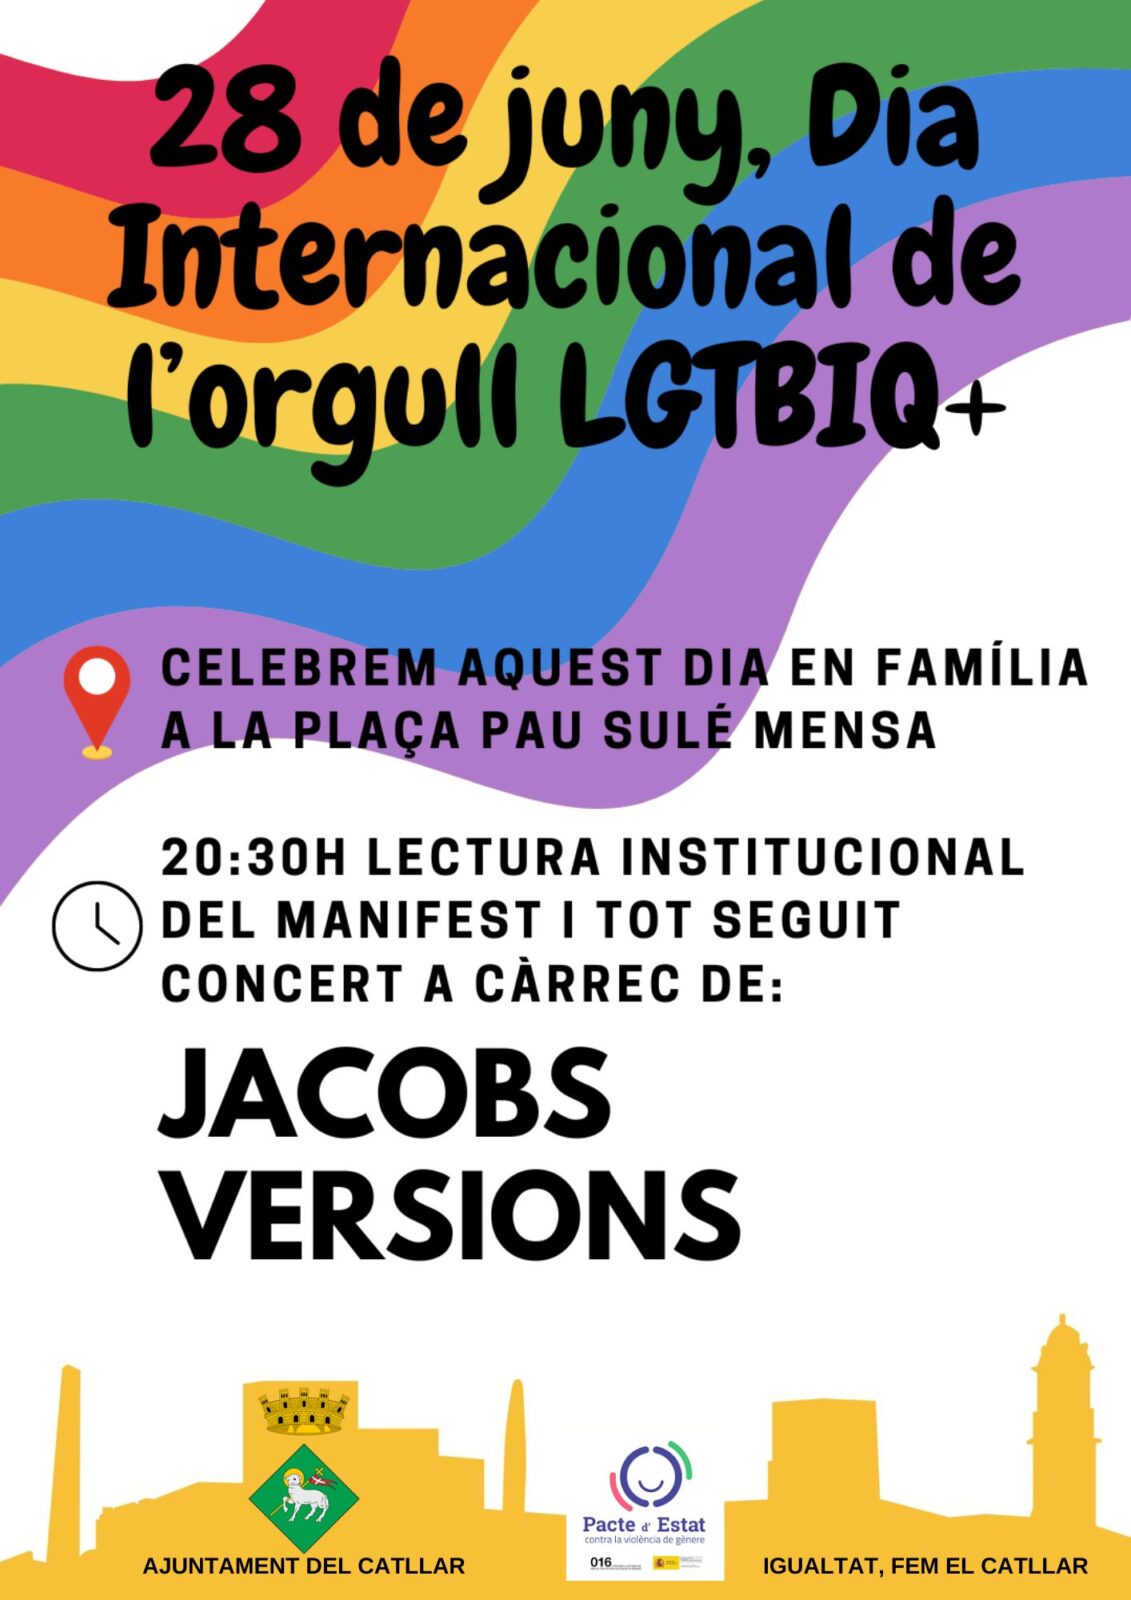 ACTES DEL DIA INTERNACIONAL DE L'ORGULL LGTBIQ+, DIVENDRES 28 DE JUNY